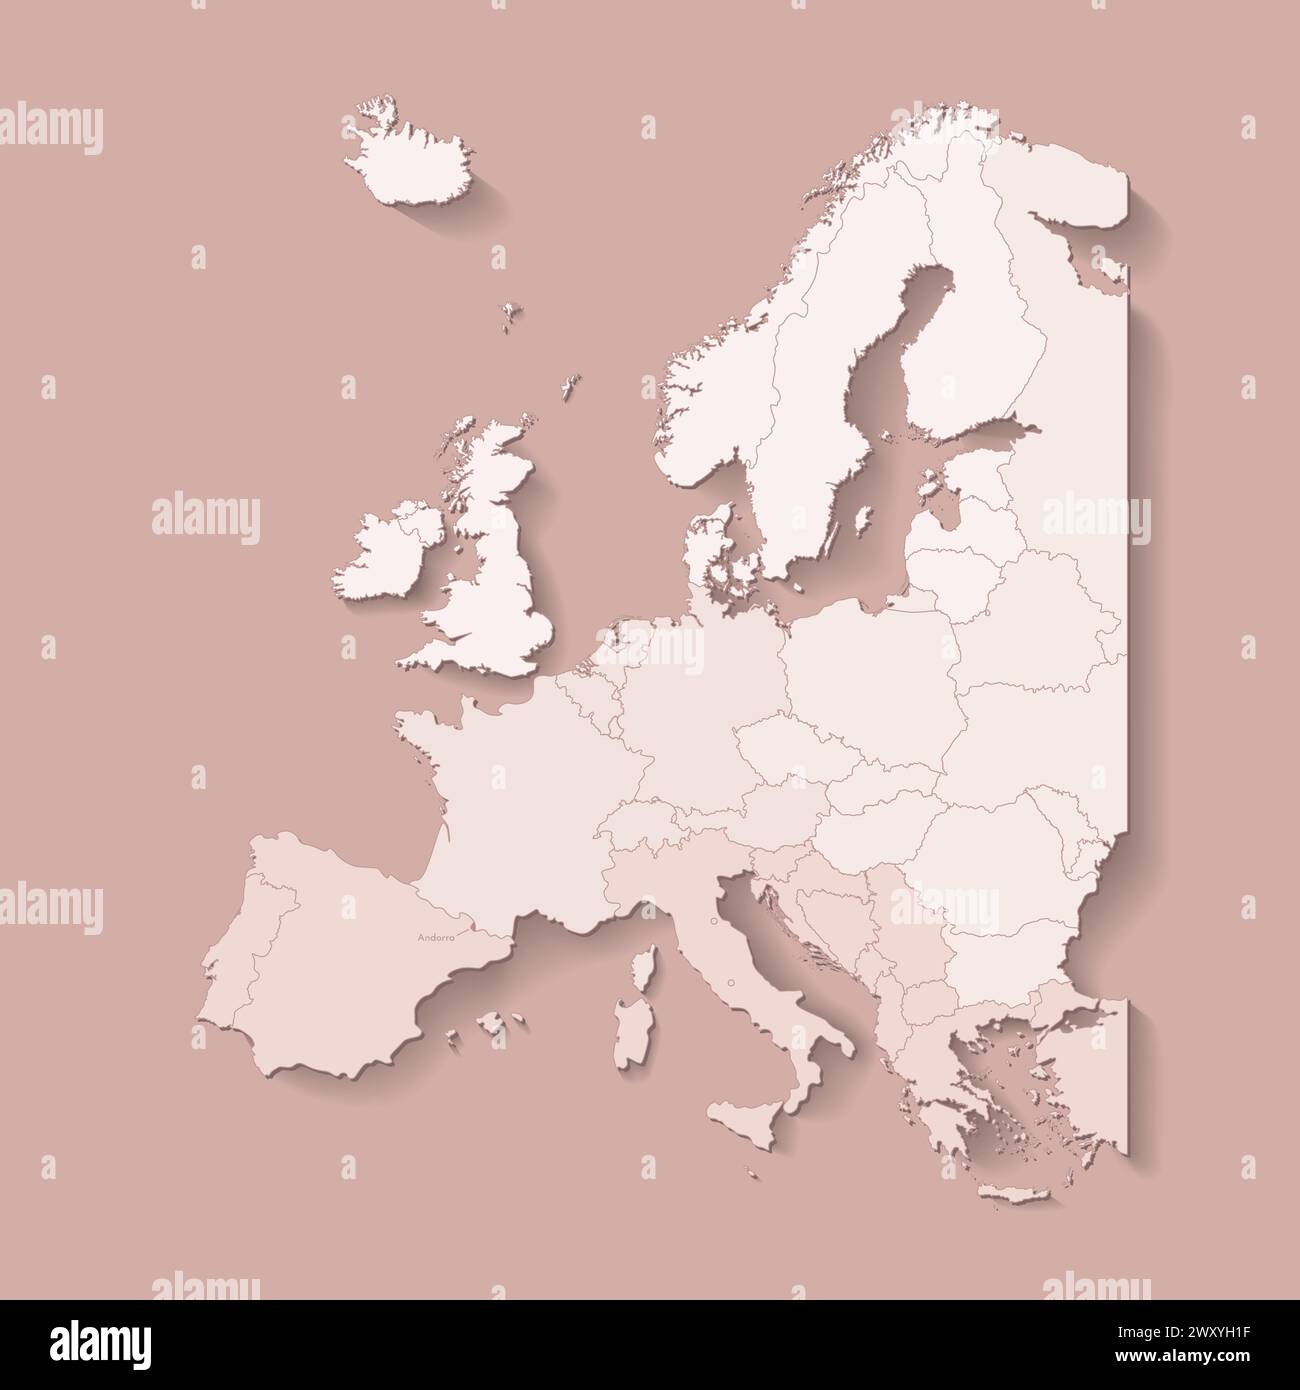 Illustrazione vettoriale con terra europea con confini di stati e paese contrassegnato Andorra. Mappa politica di colore marrone con occidentale, sud e così via Illustrazione Vettoriale